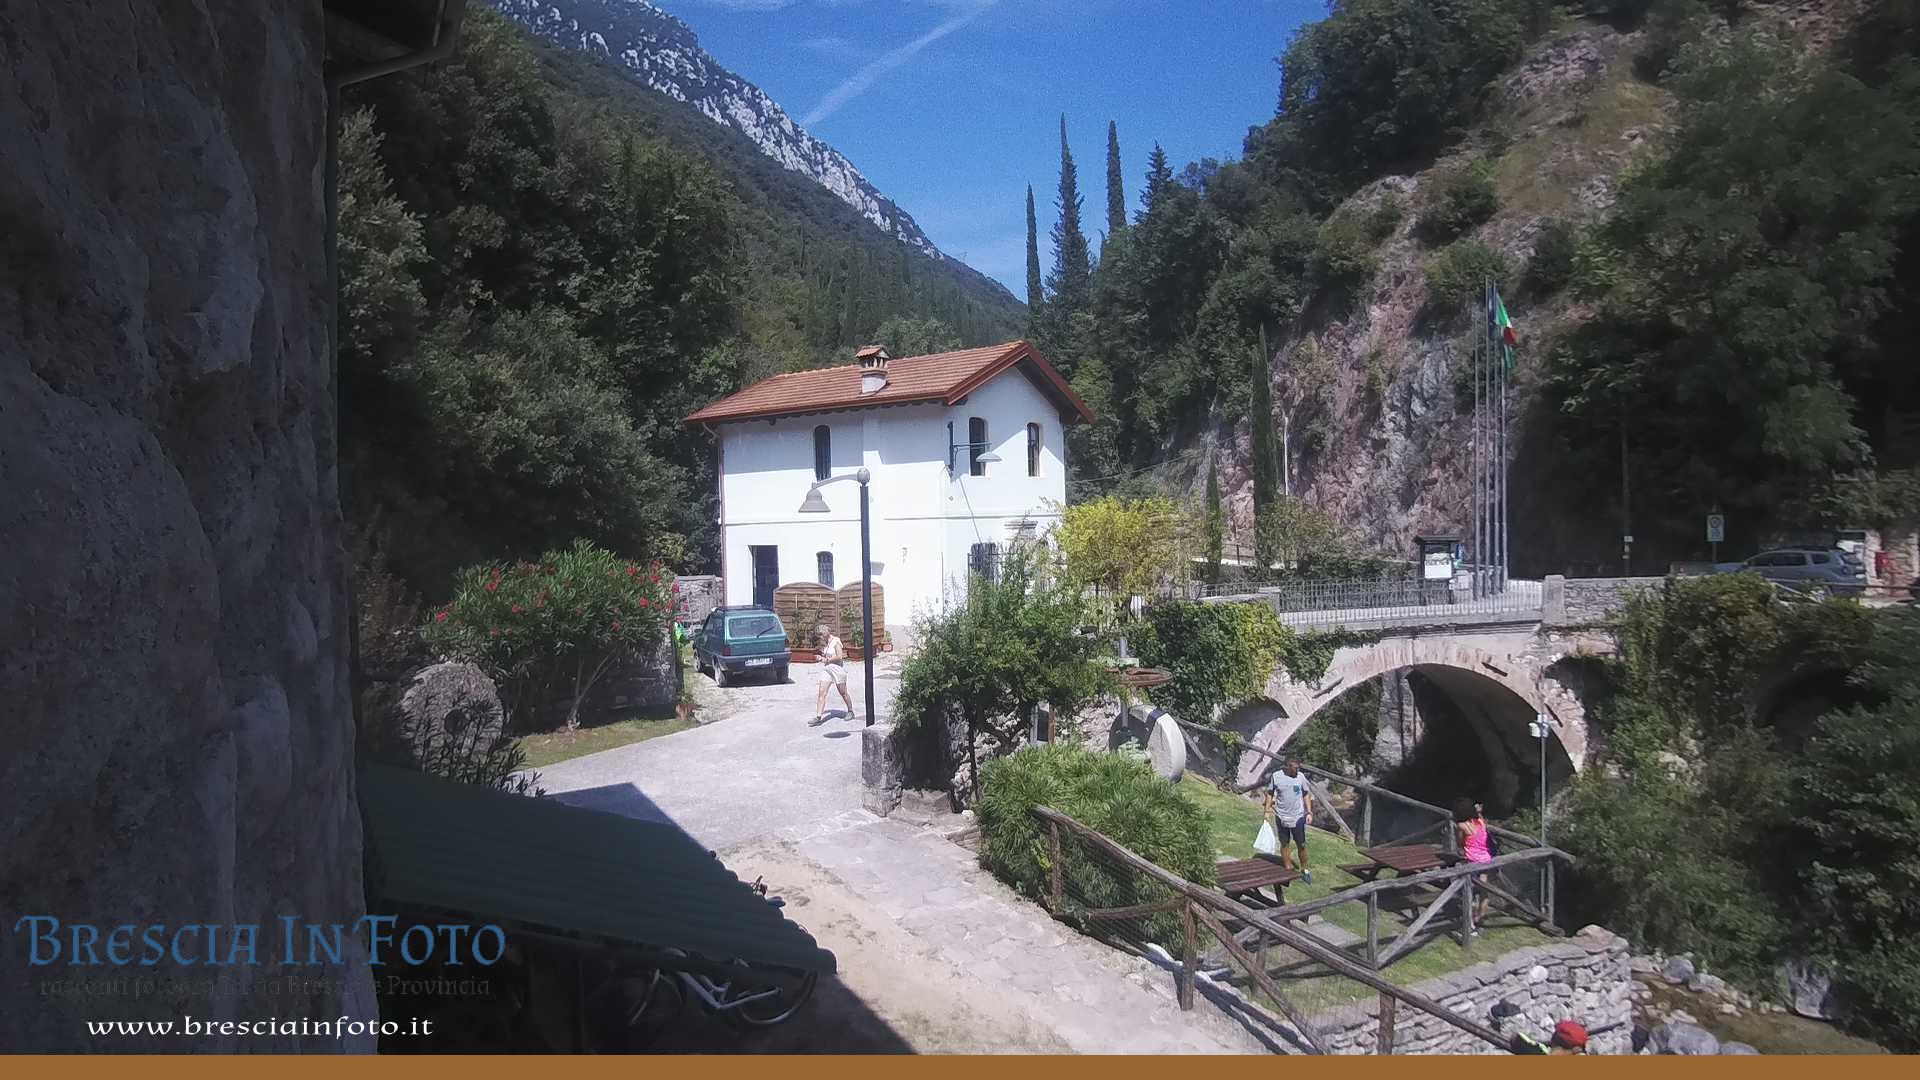 Webcam Toscolano, Maderno - Gardasee - NW